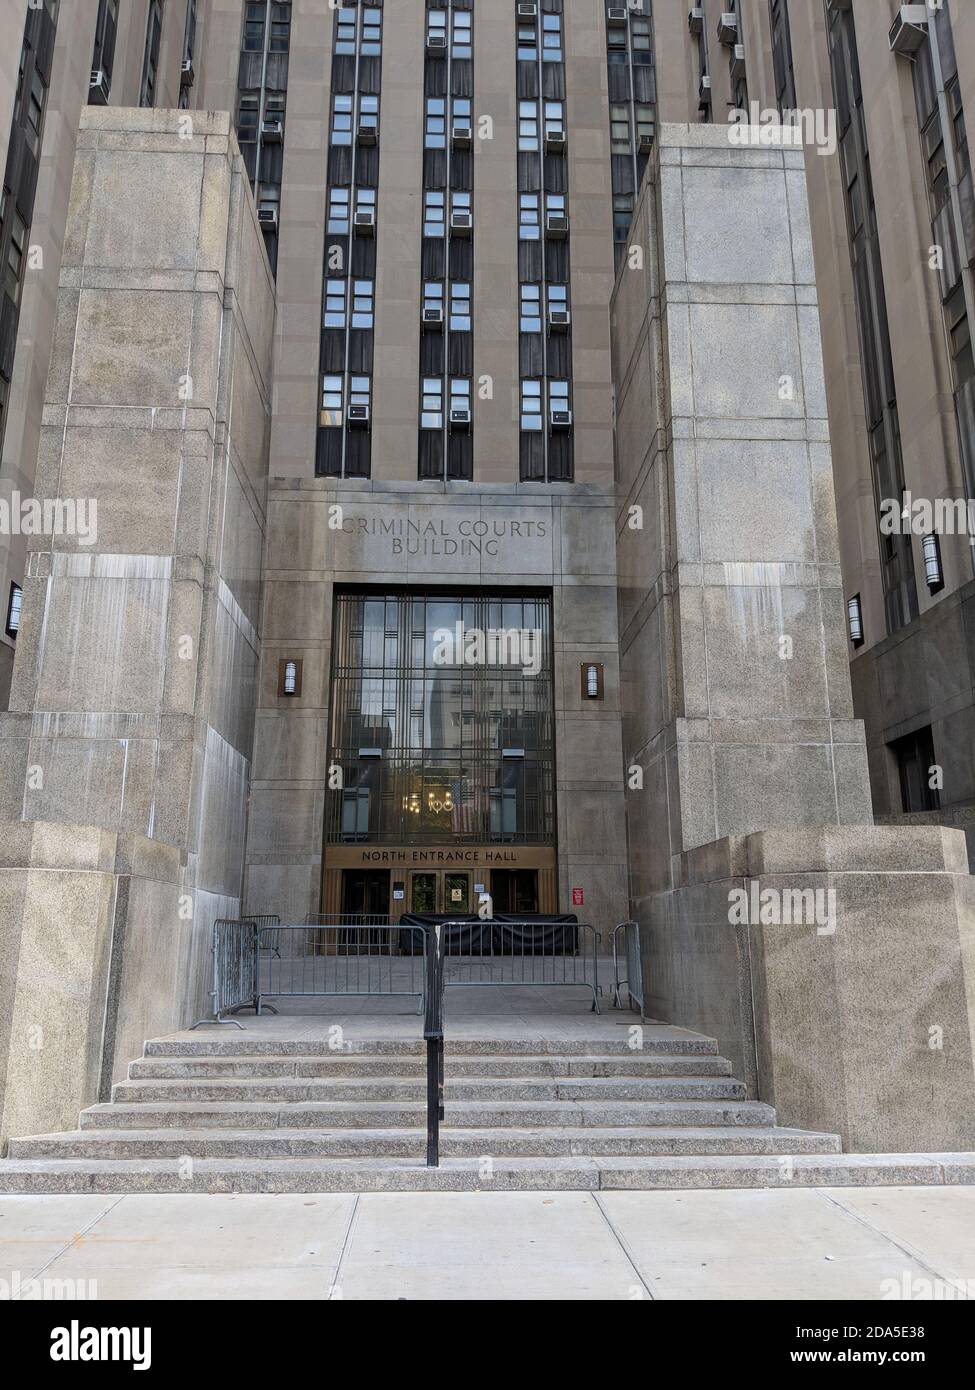 New York City, NY/USA - 6. Oktober 2019: Gebäude des Gerichtsgebäudes aus Marmor mit blockiertem Eingang zur North Entrance Hall. Strafgerichte Gebäude mit g Stockfoto